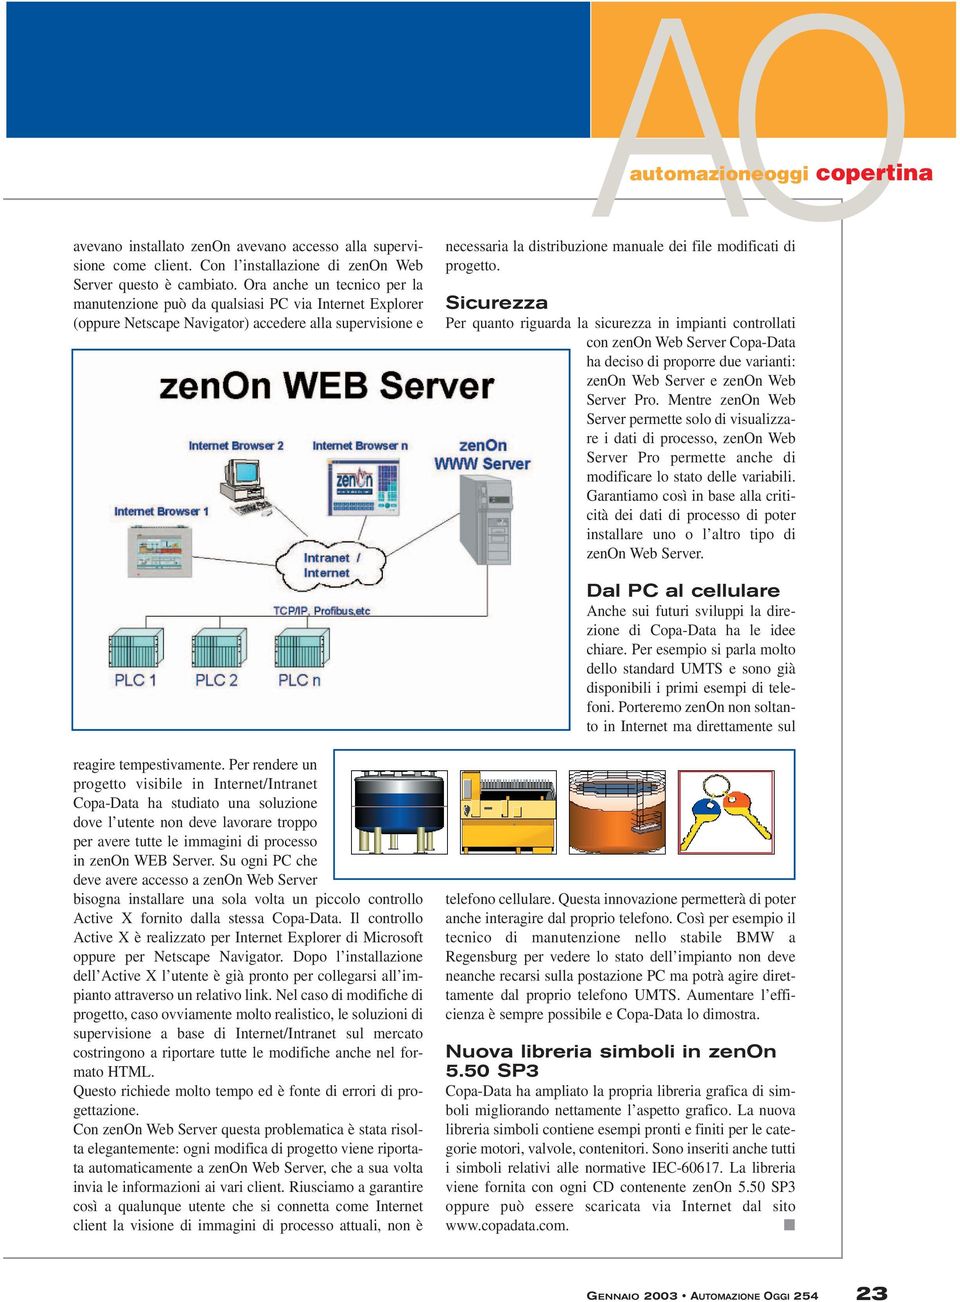 di progetto. Sicurezza Per quanto riguarda la sicurezza in impianti controllati con zenon Web Server Copa-Data ha deciso di proporre due varianti: zenon Web Server e zenon Web Server Pro.